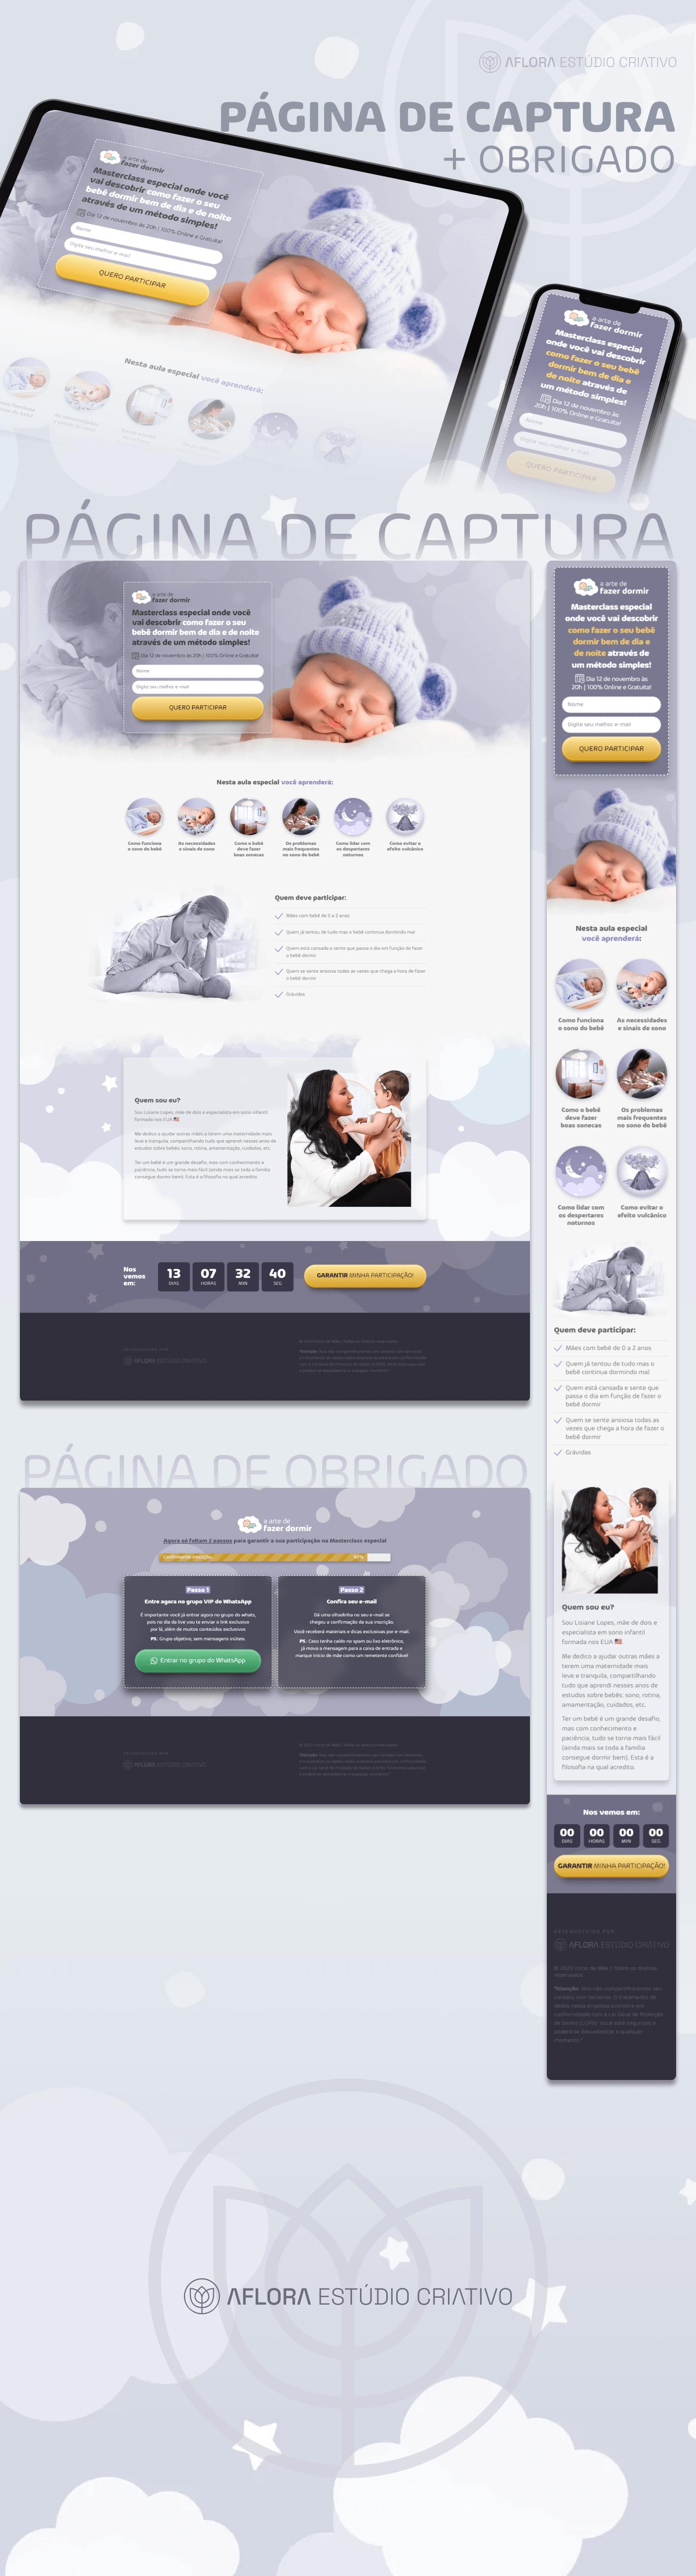 landing page Web Design  Website Página de captura lançamento marketing digital infoproduto bebe